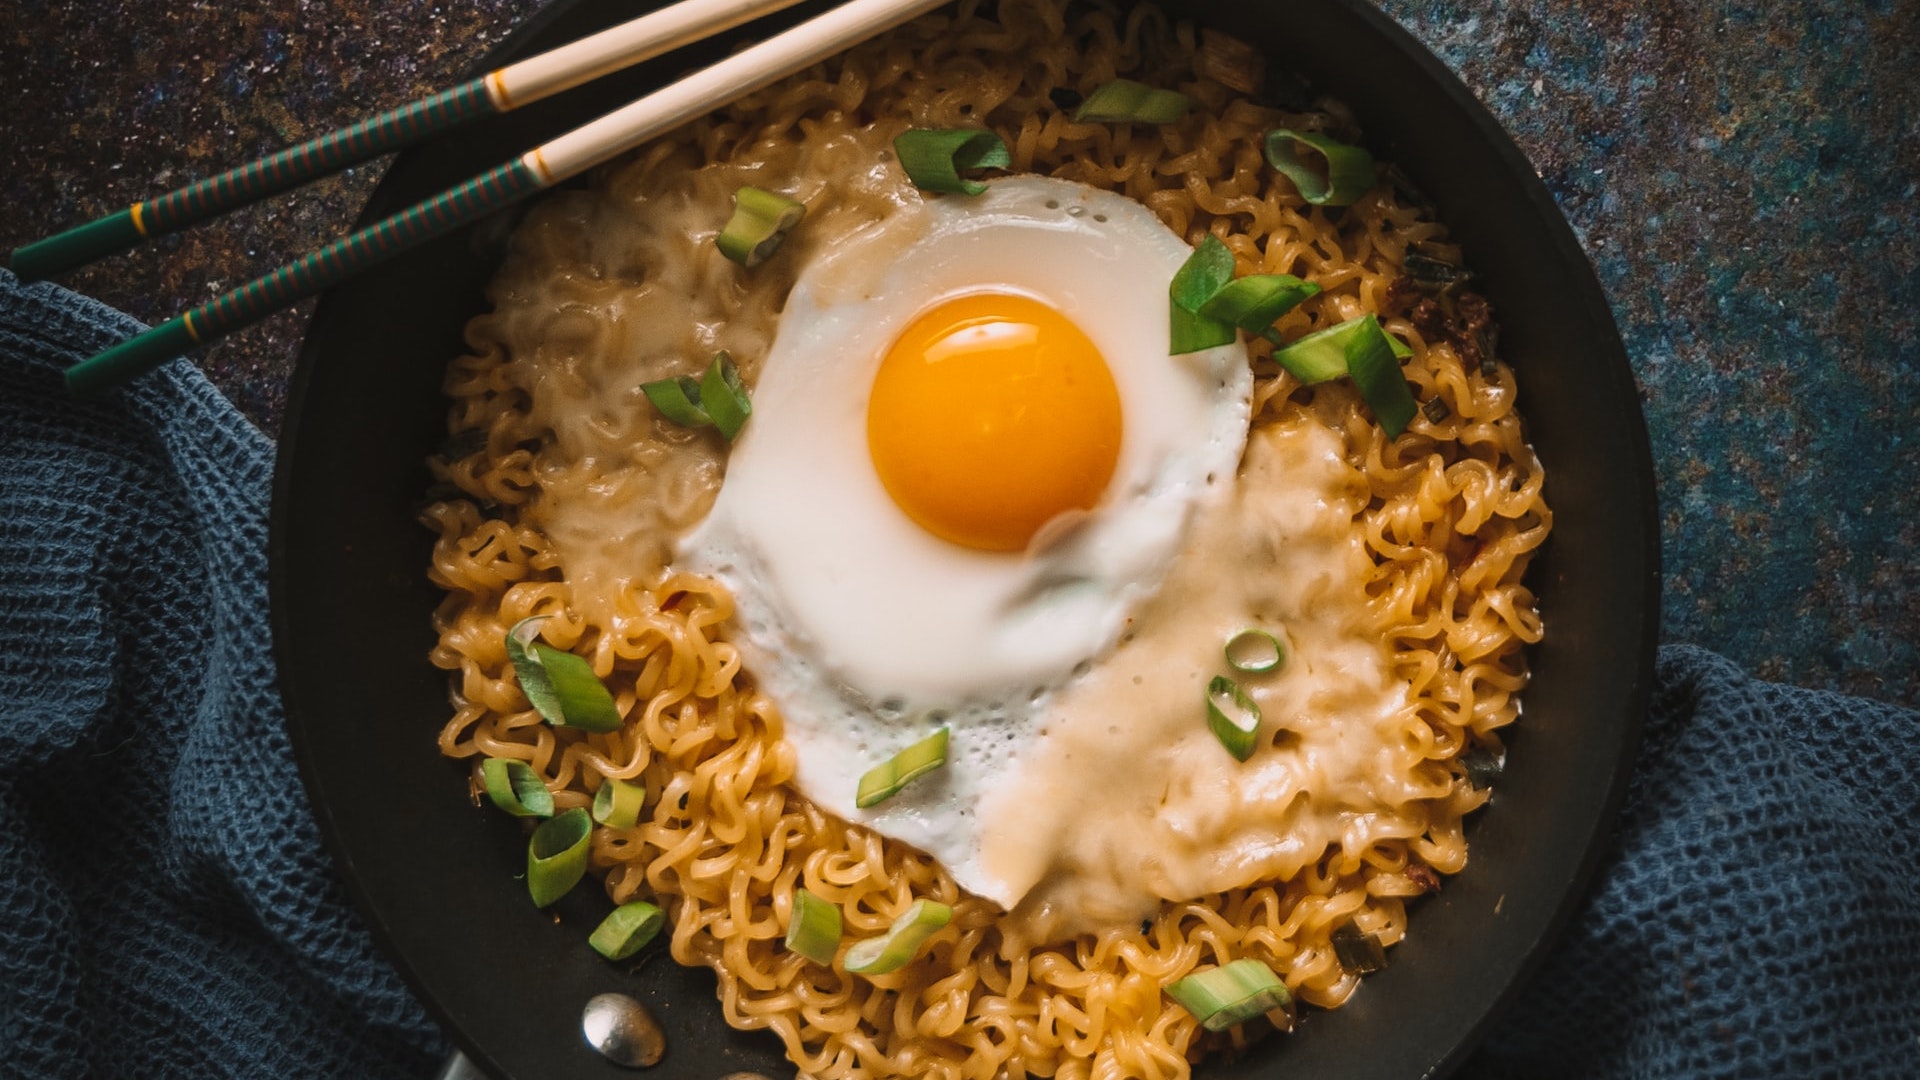 Are ramen noodles egg noodles?